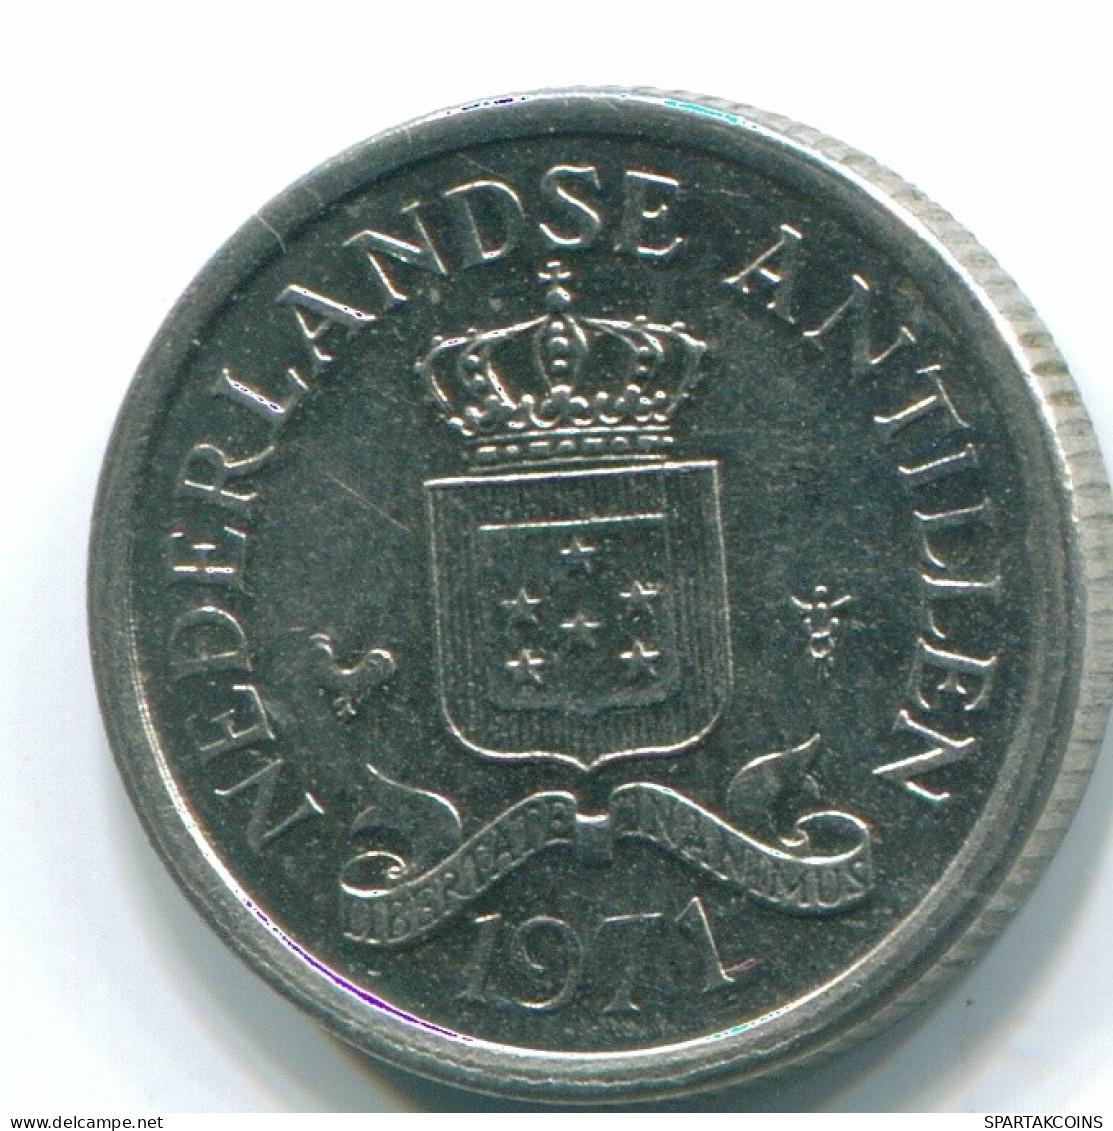 10 CENTS 1971 NETHERLANDS ANTILLES Nickel Colonial Coin #S13468.U.A - Niederländische Antillen